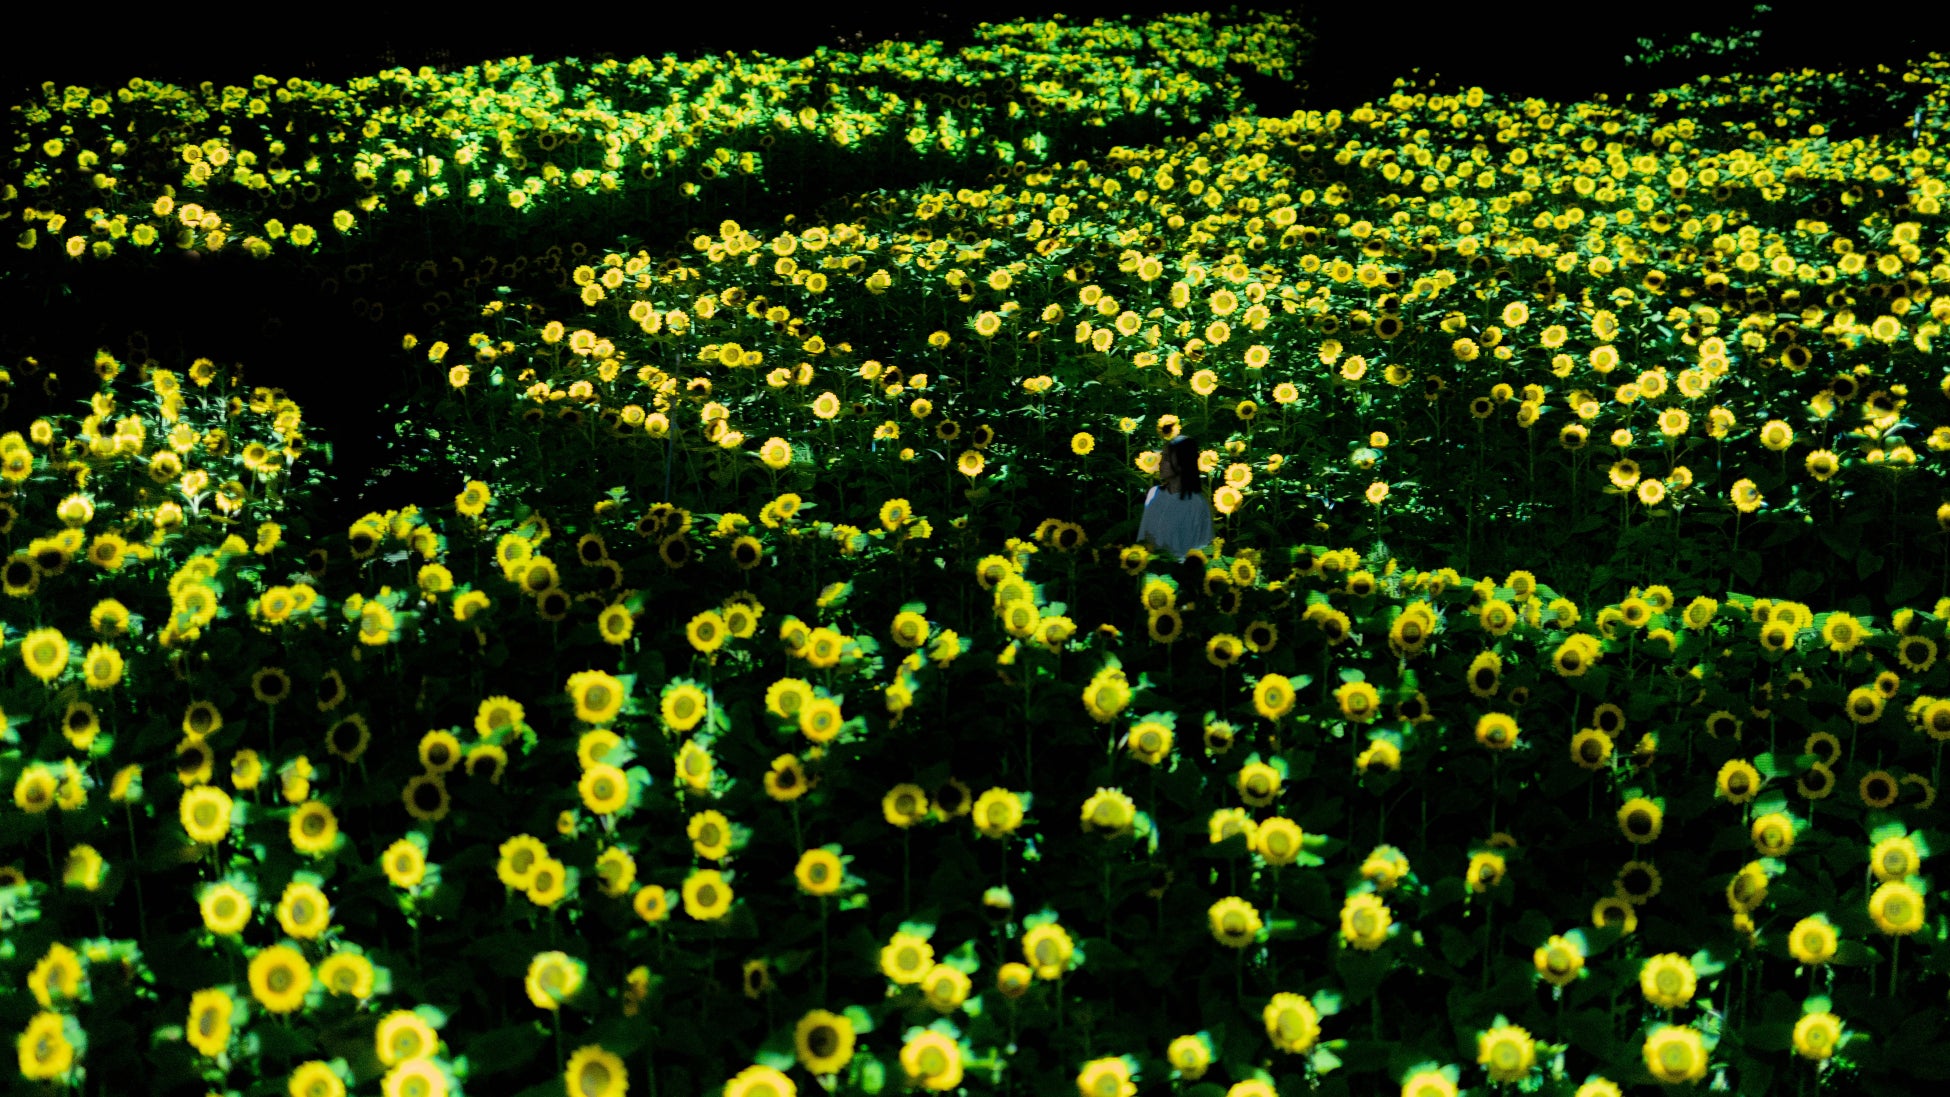 「チームラボ ボタニカルガーデン 大阪」、2万株のヒマワリが夜の植物園で一面に光り輝く作品を公開。展示期間は、8月3日(土)から。